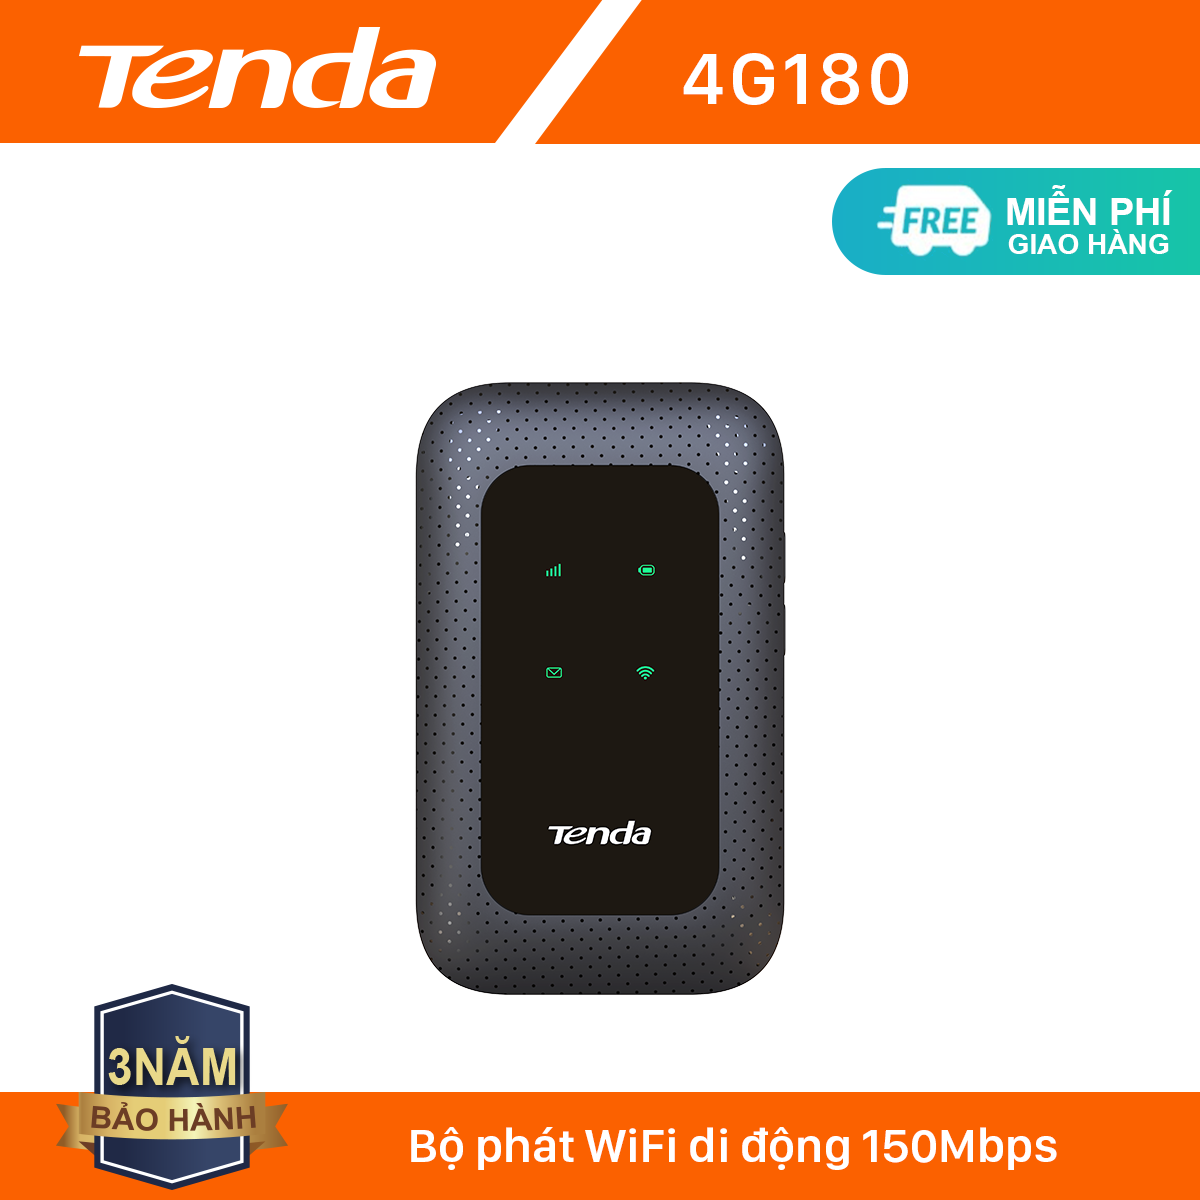 Tenda Bộ phát Wifi di động 4G LTE 4G180 – Hãng phân phối chính thức